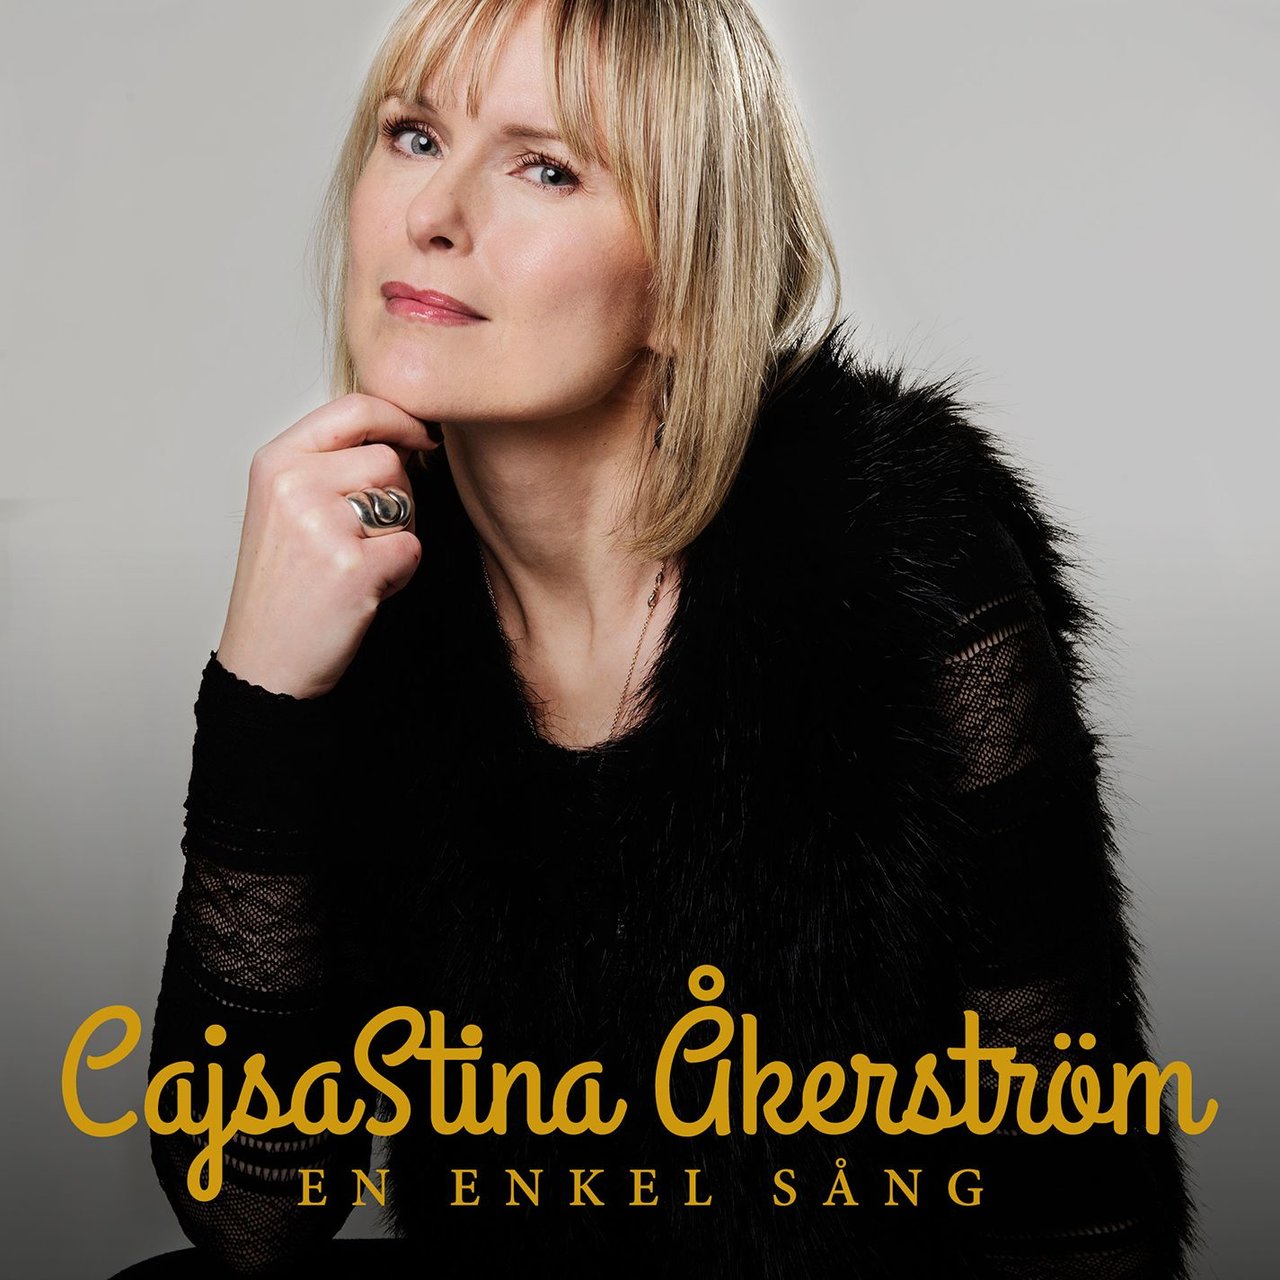 CajsaStina Åkerström — En enkel sång cover artwork